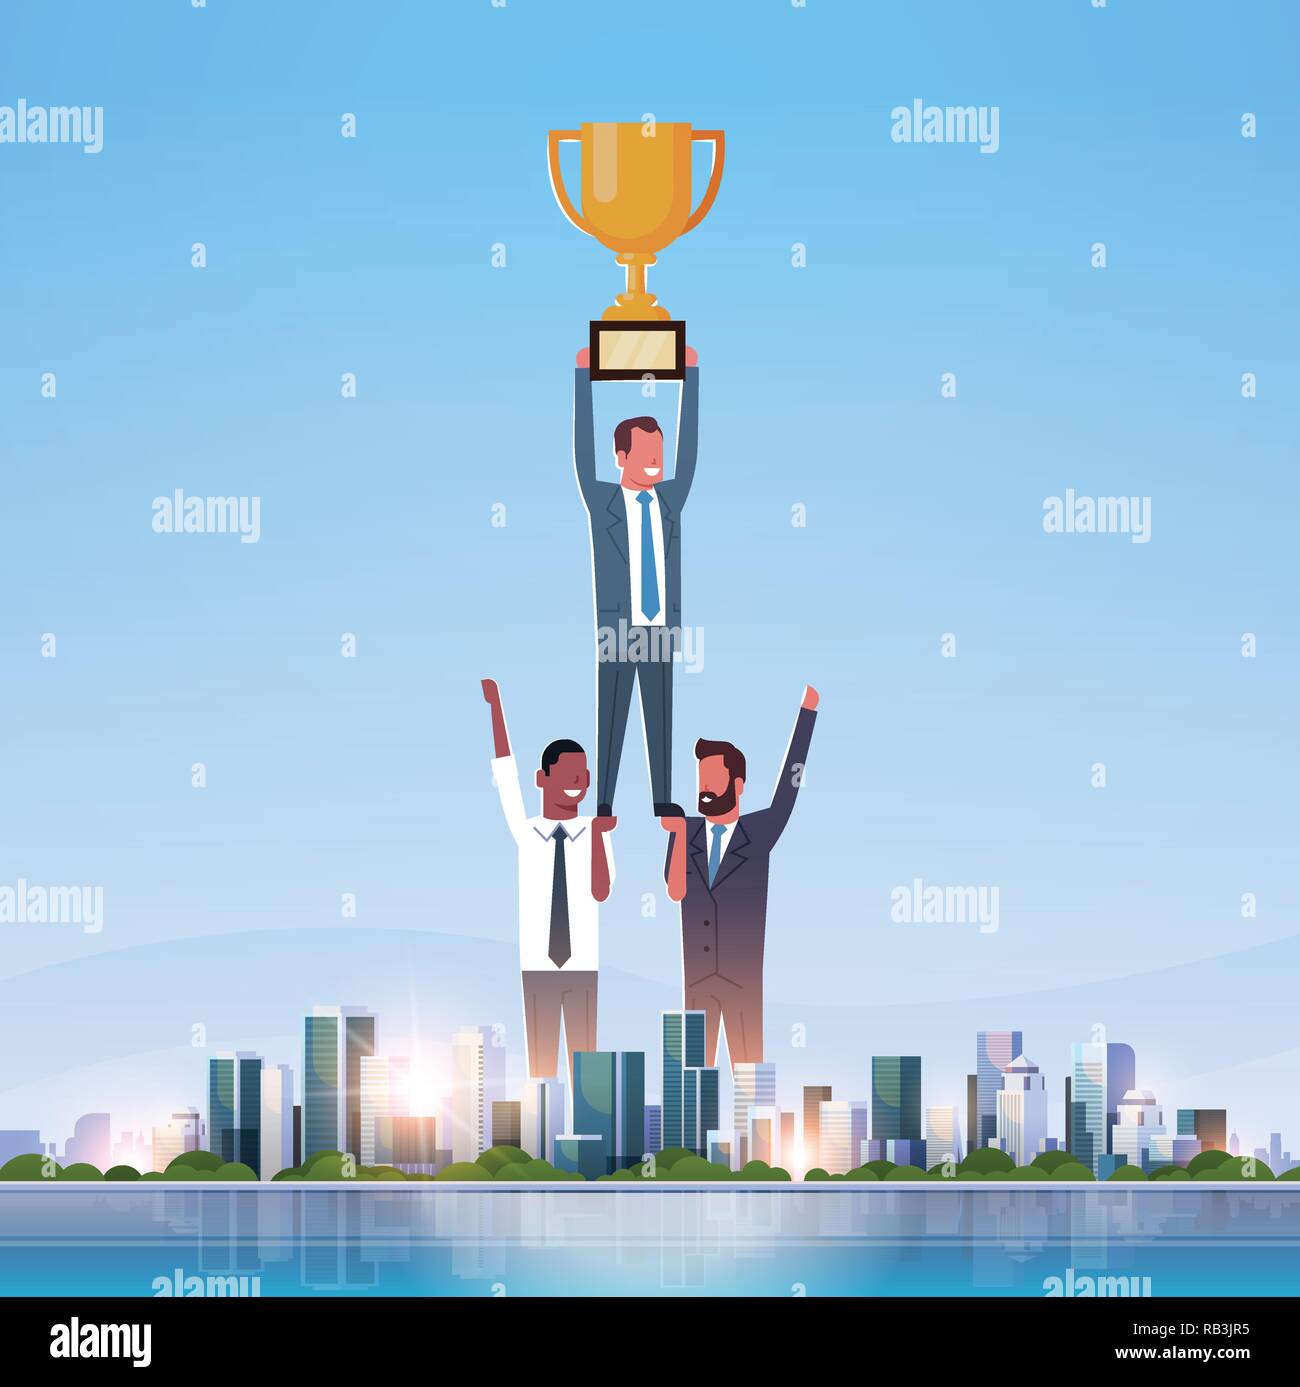 Erfolgreiche Geschäftsleute Group Holding Golden Cup Tannen Sieg Konzept erfolgreiche Teamarbeit über grosse moderne Stadt Wolkenkratzer skyline Skyline waagrechten Platz Stock Vektor